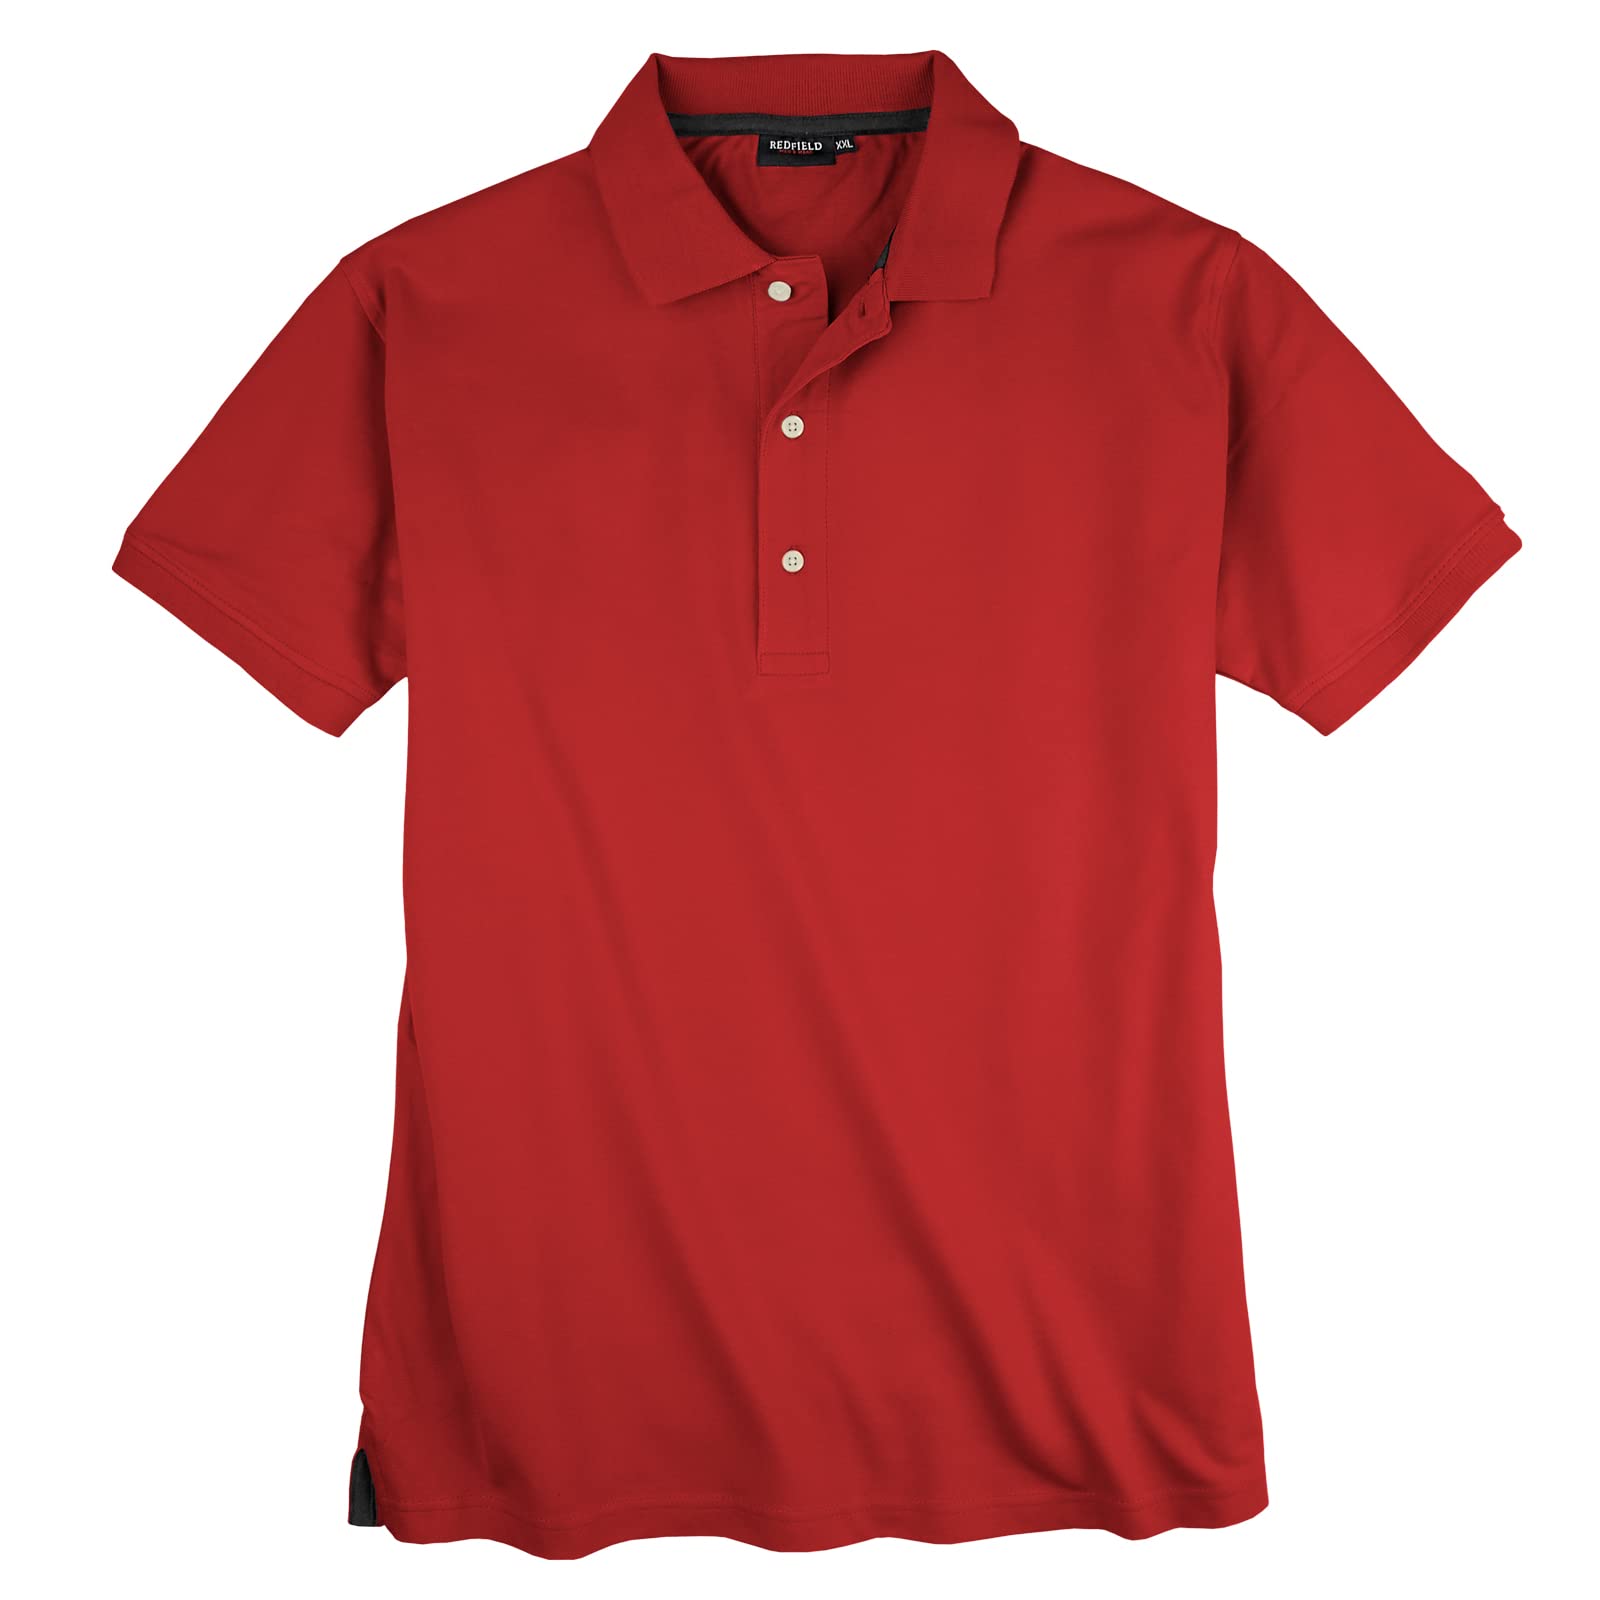 Redfield Basic rotes Stretch-Poloshirt Übergröße, Größe:8XL